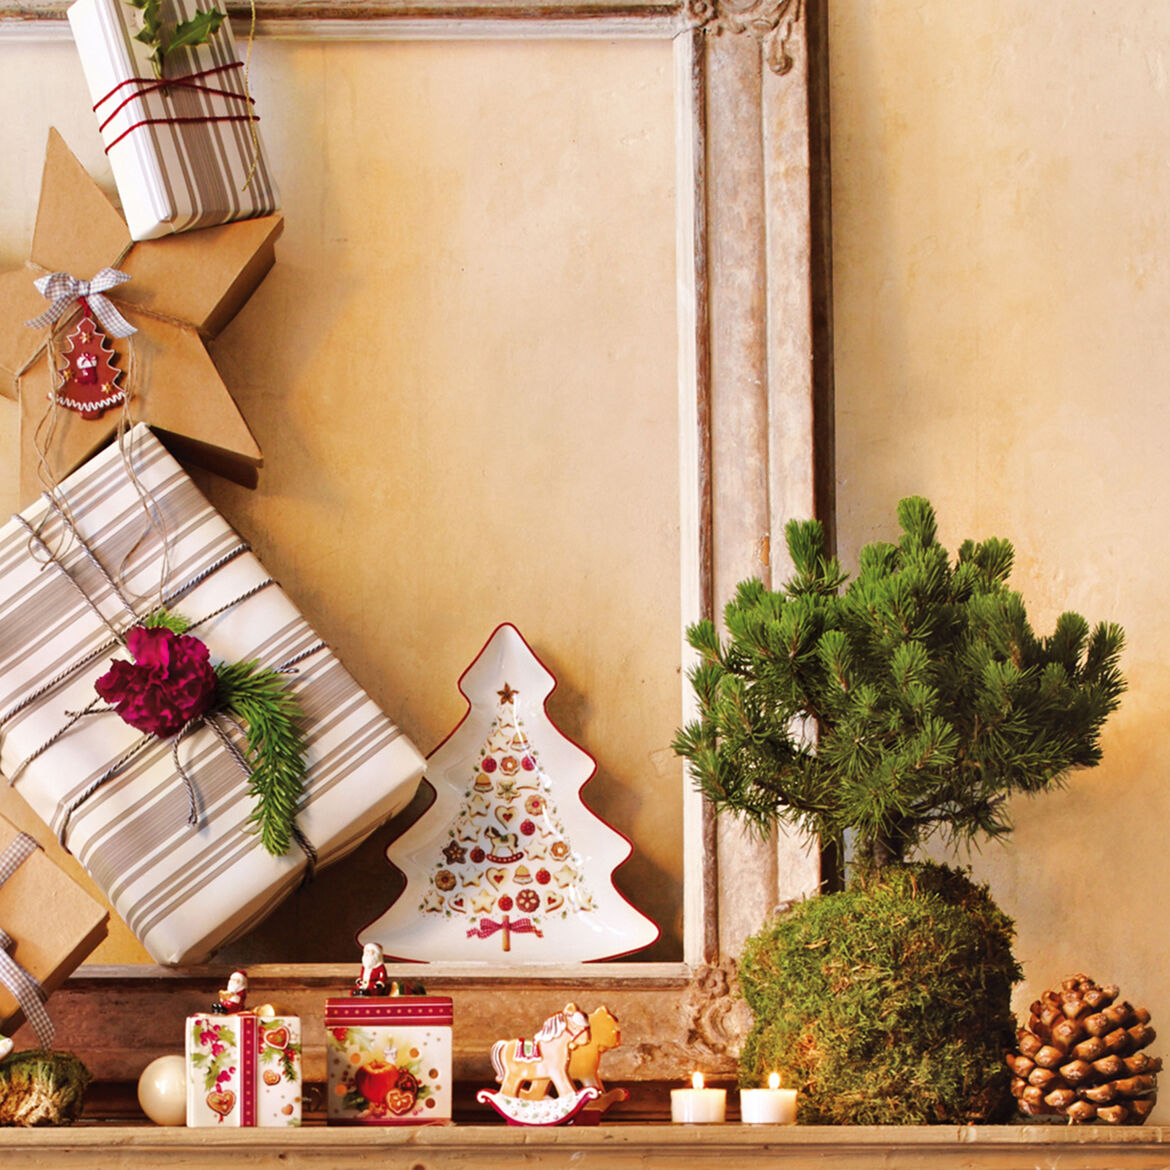 VILLEROY & BOCH - Winter Bakery Delight Coppa Ciotola Albero di Natale 26,5cm